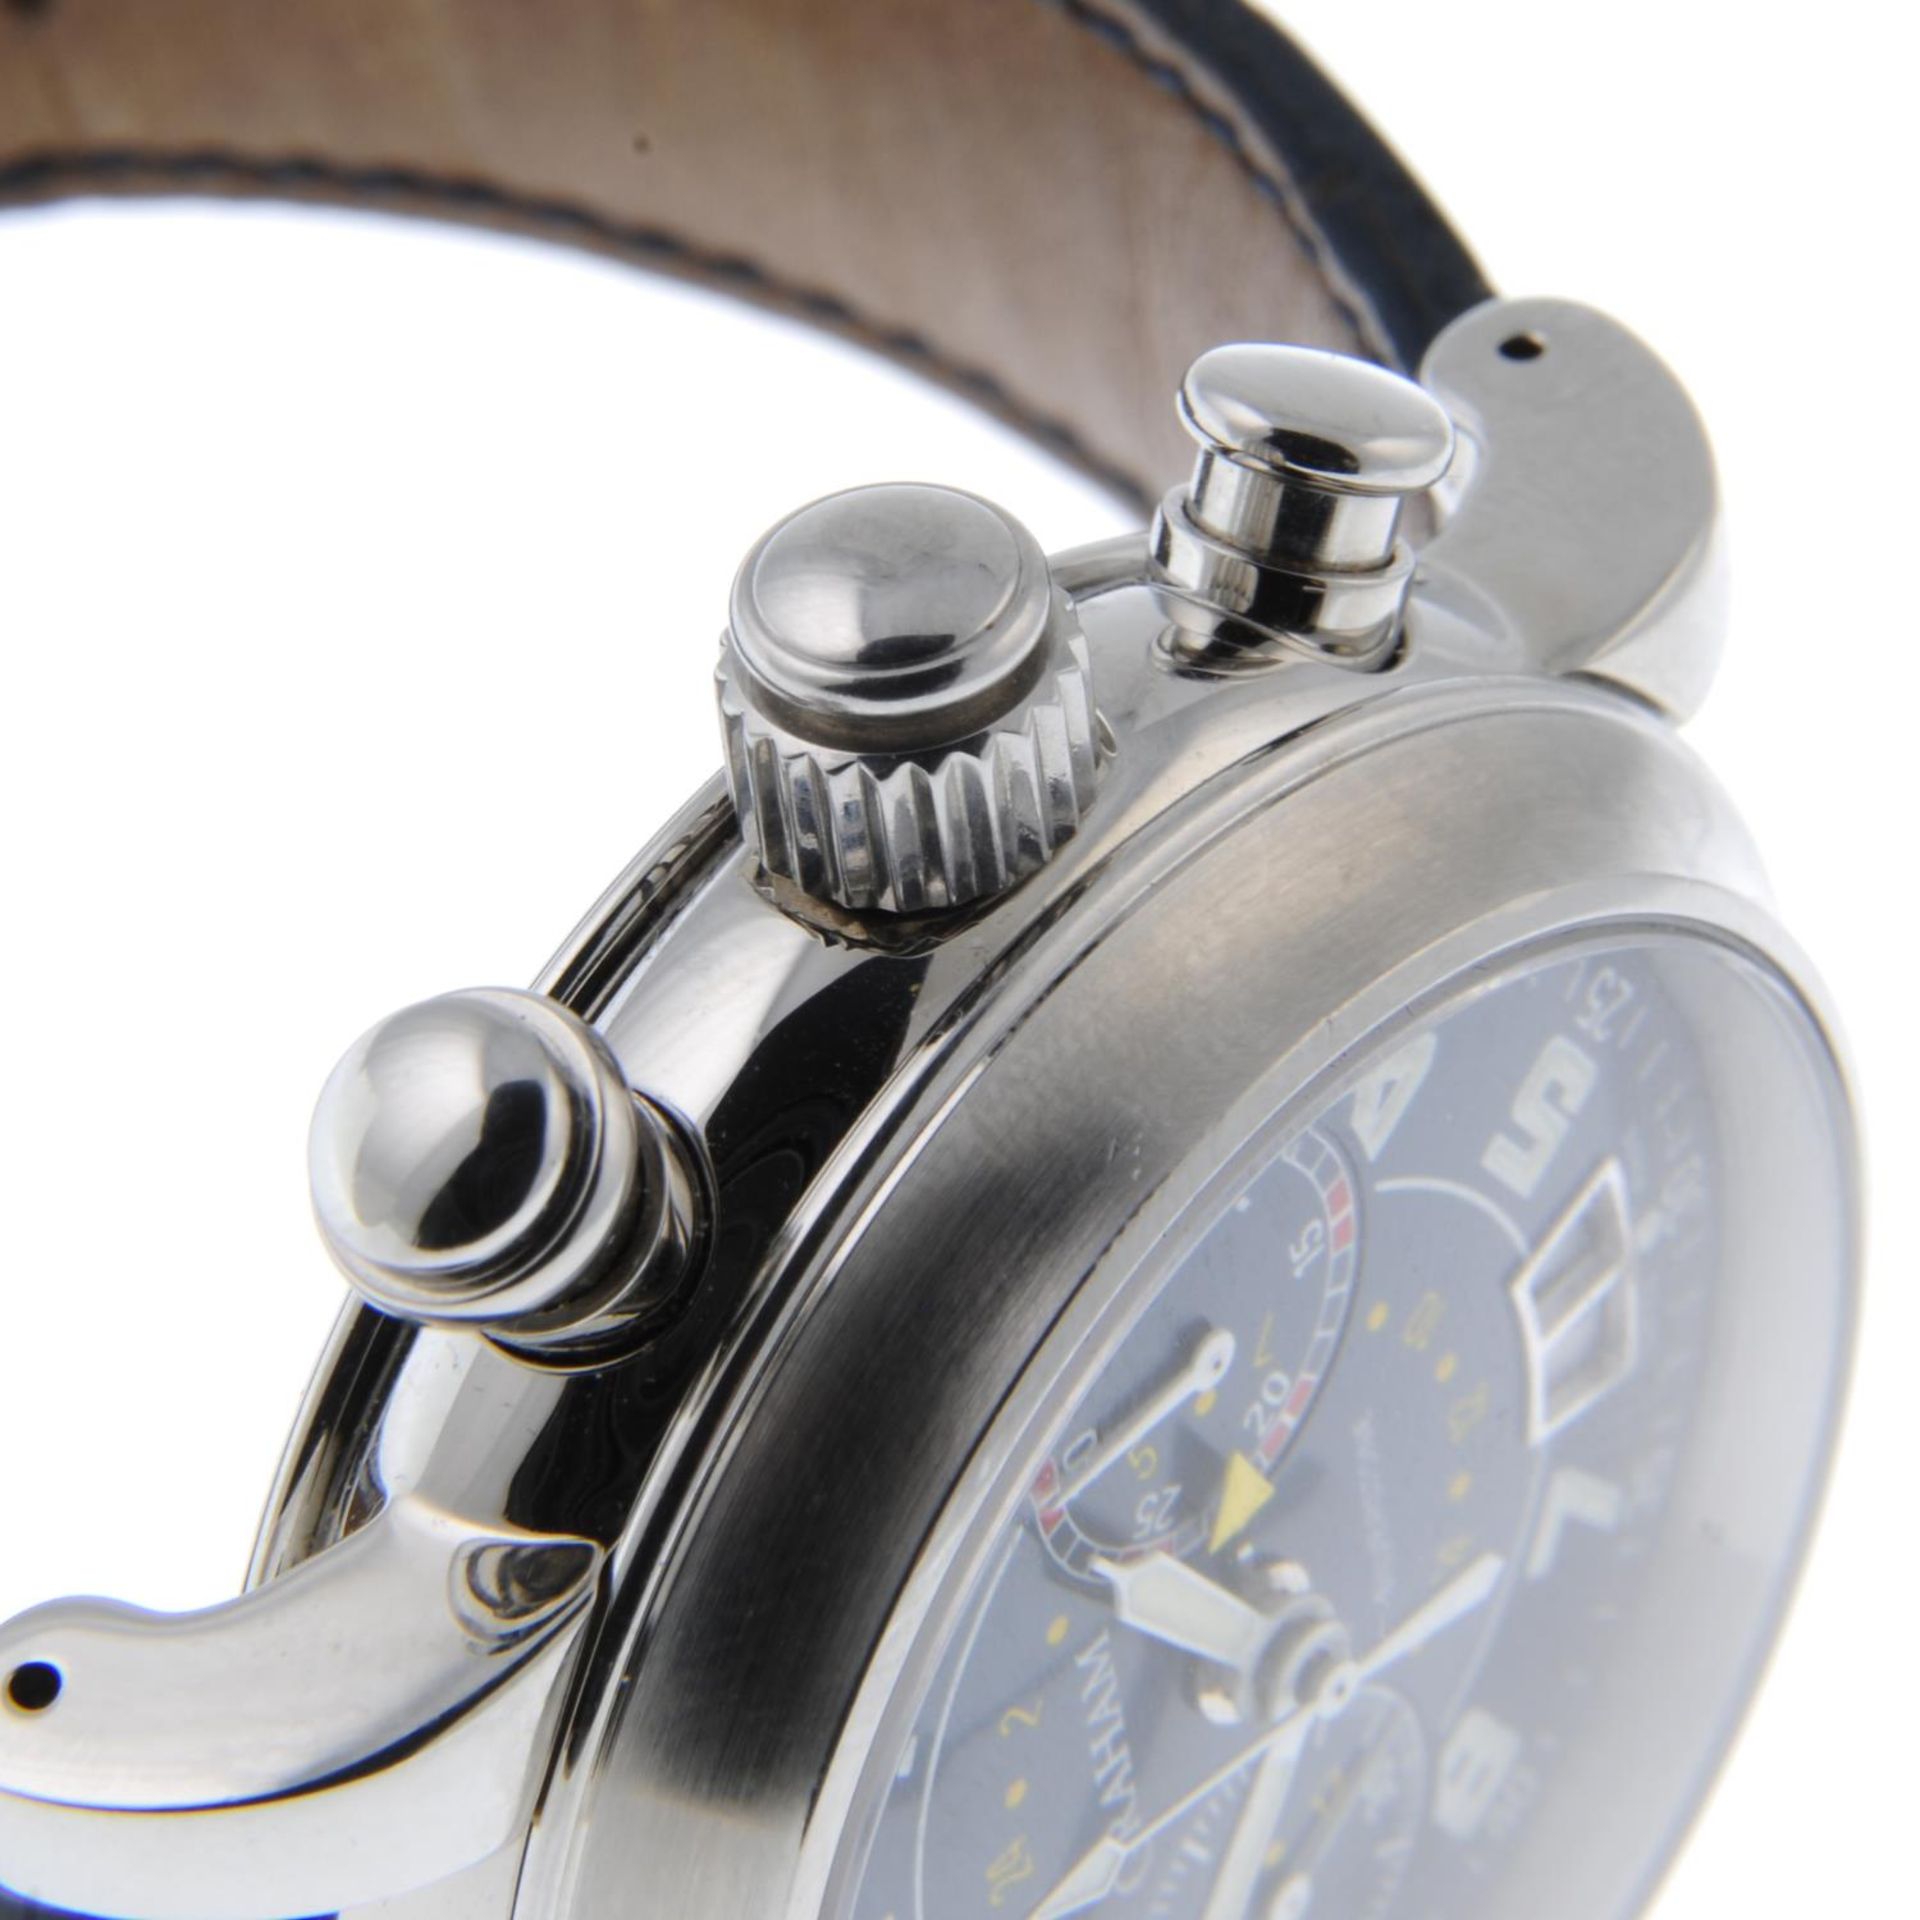 GRAHAM - a gentleman's Silverstone GMT chronograph wrist watch. - Bild 4 aus 4